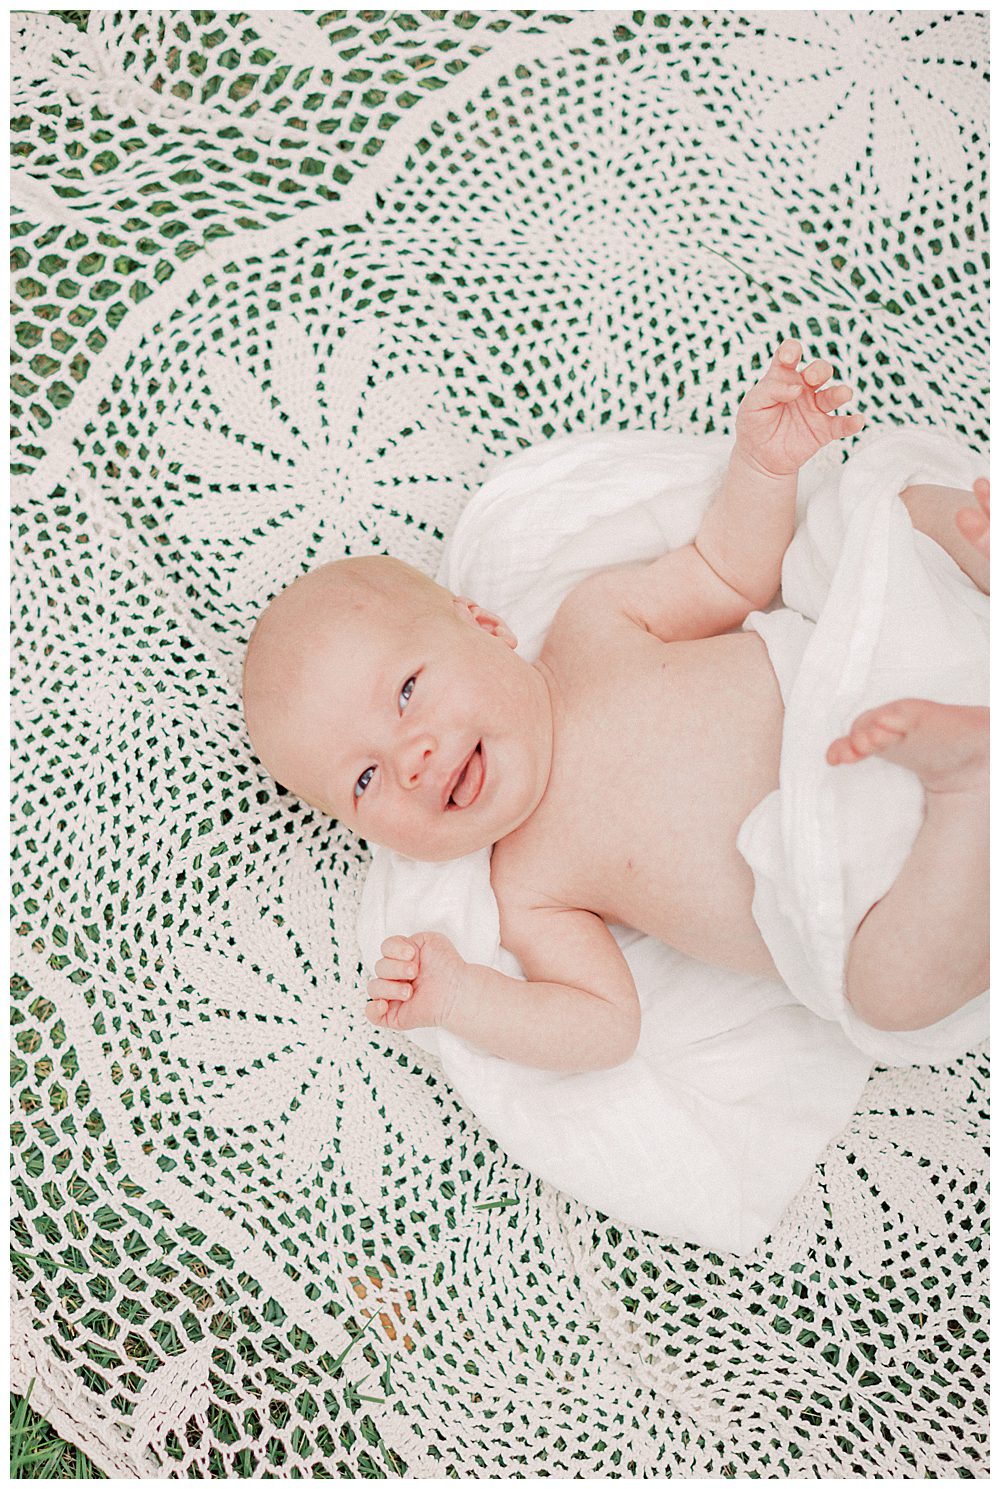 Newborn baby girl smiles as she lays on crochet blanket outside.